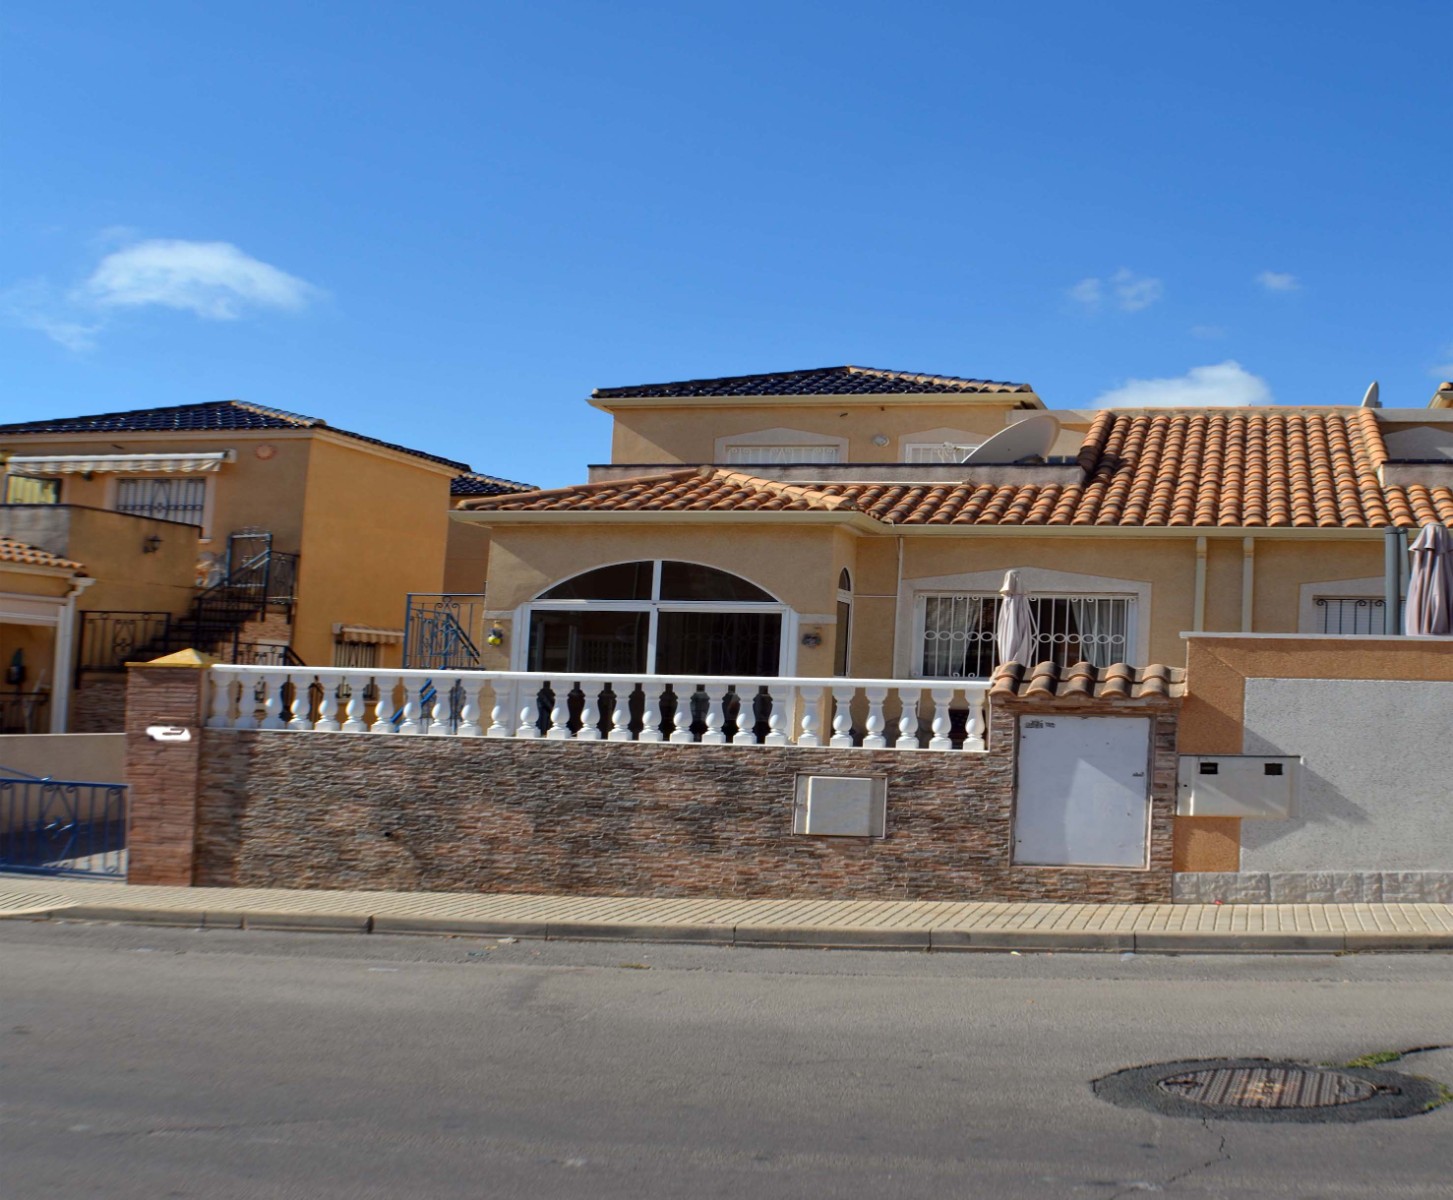 3 bedroom house / villa for sale in Los Altos, Costa Blanca